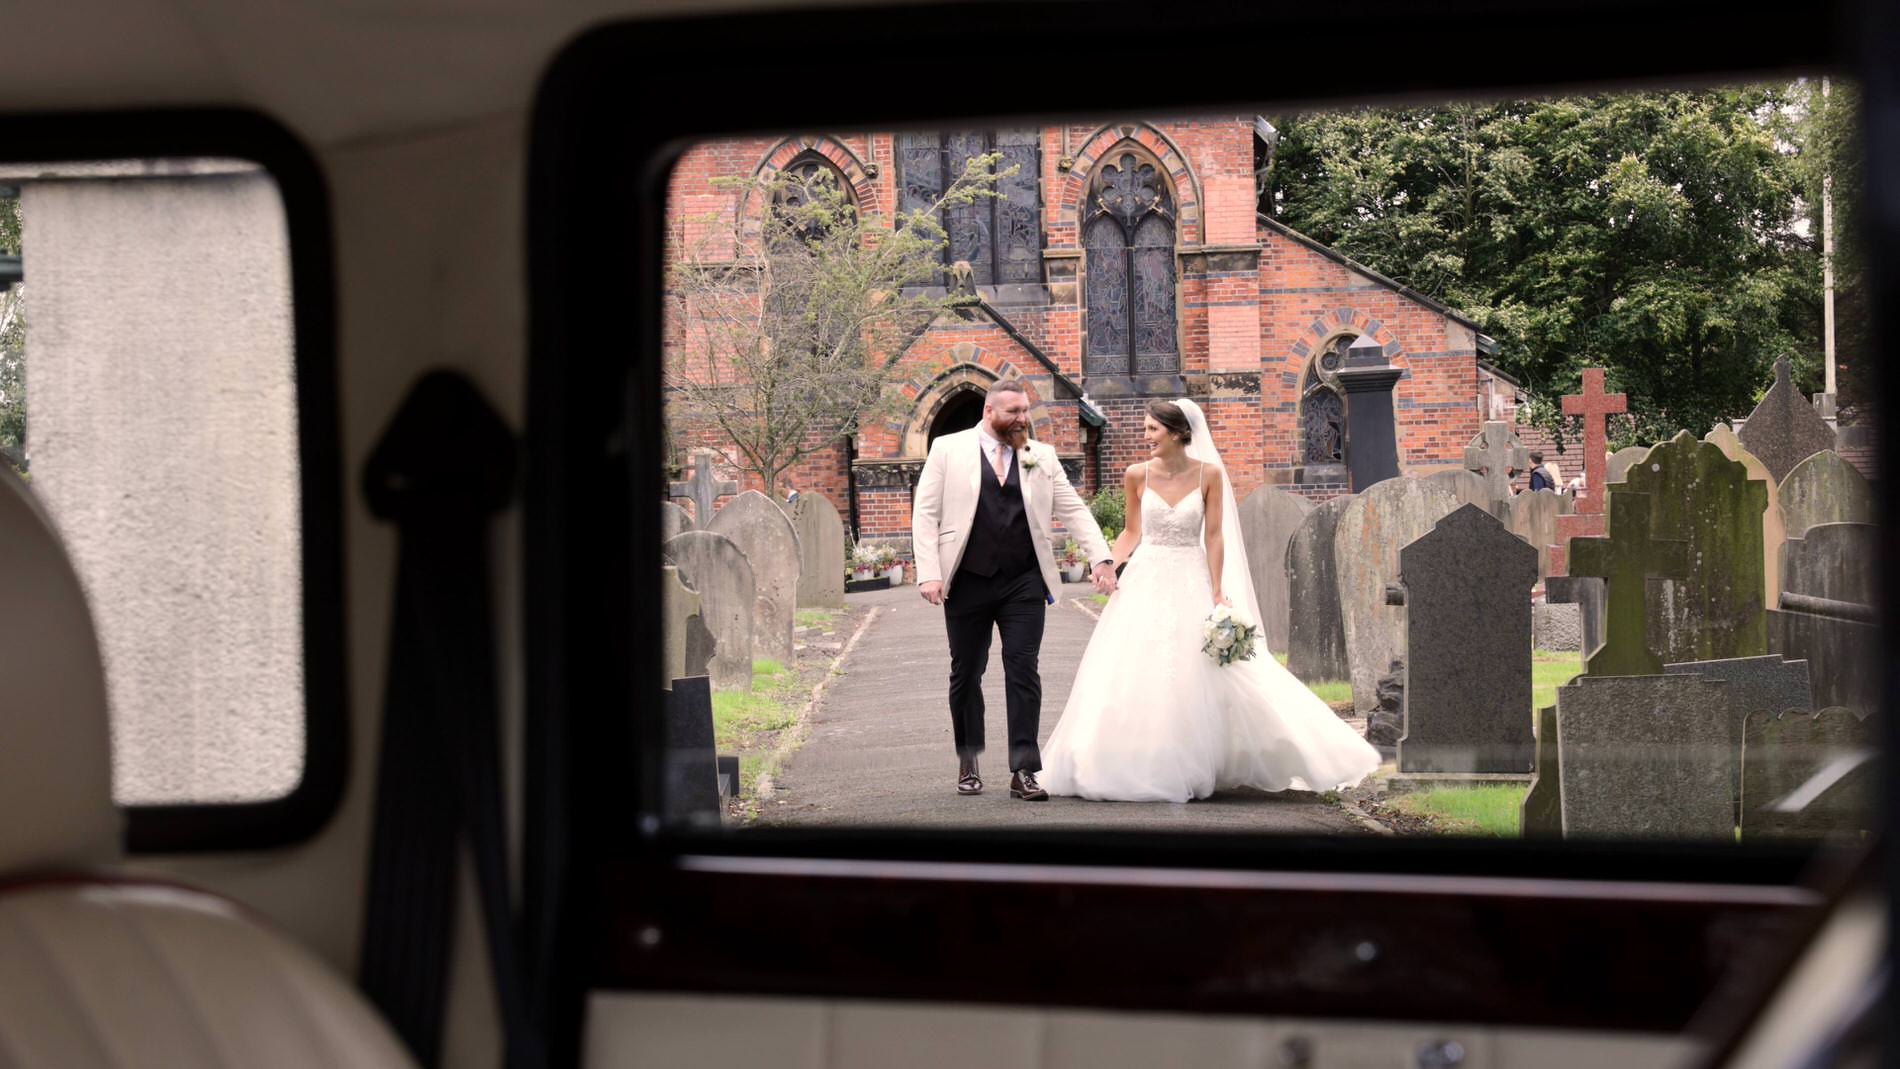 a creative wedding video through the wedding car of the couple